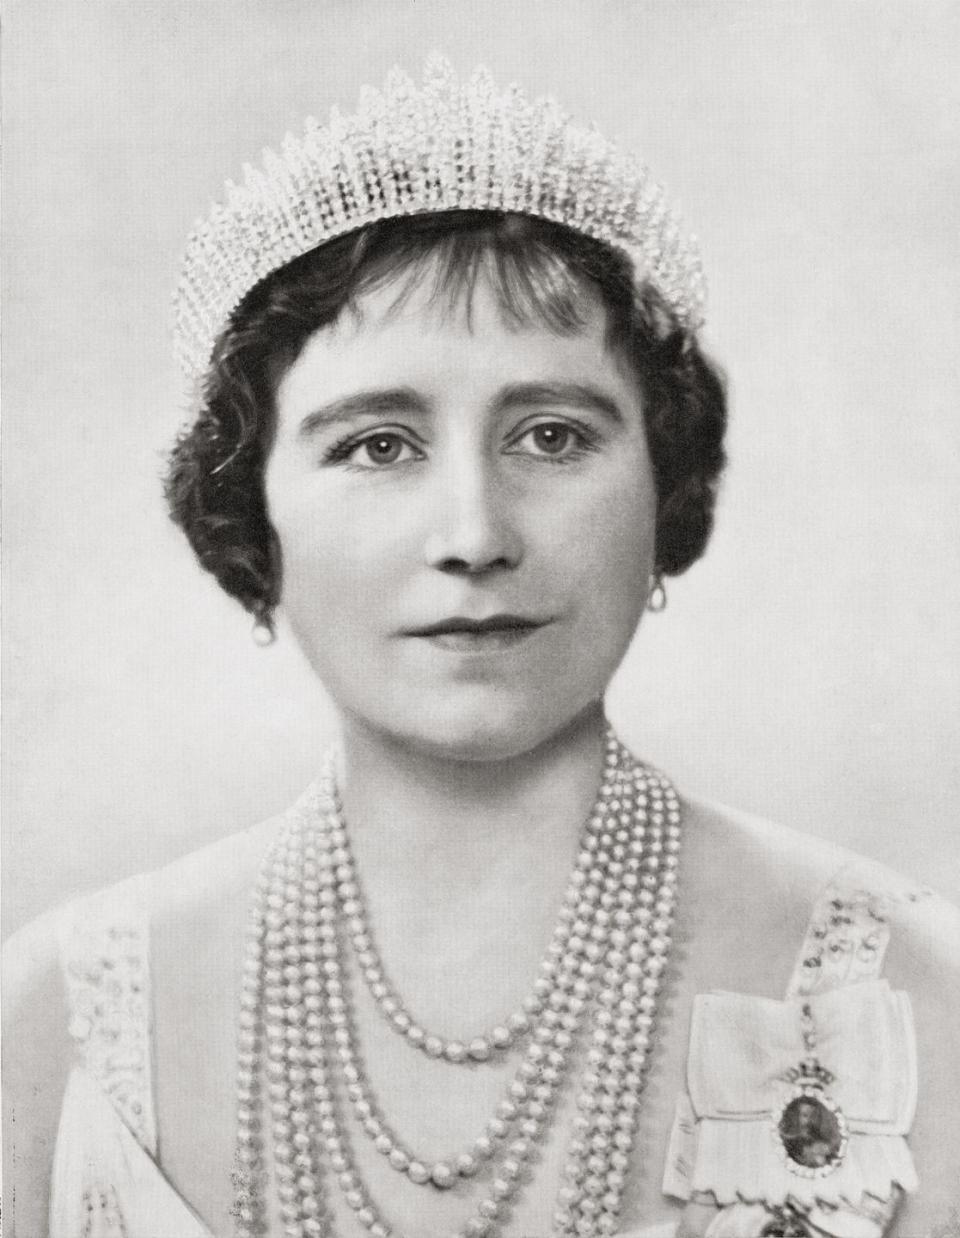 1937: Becoming Queen Consort